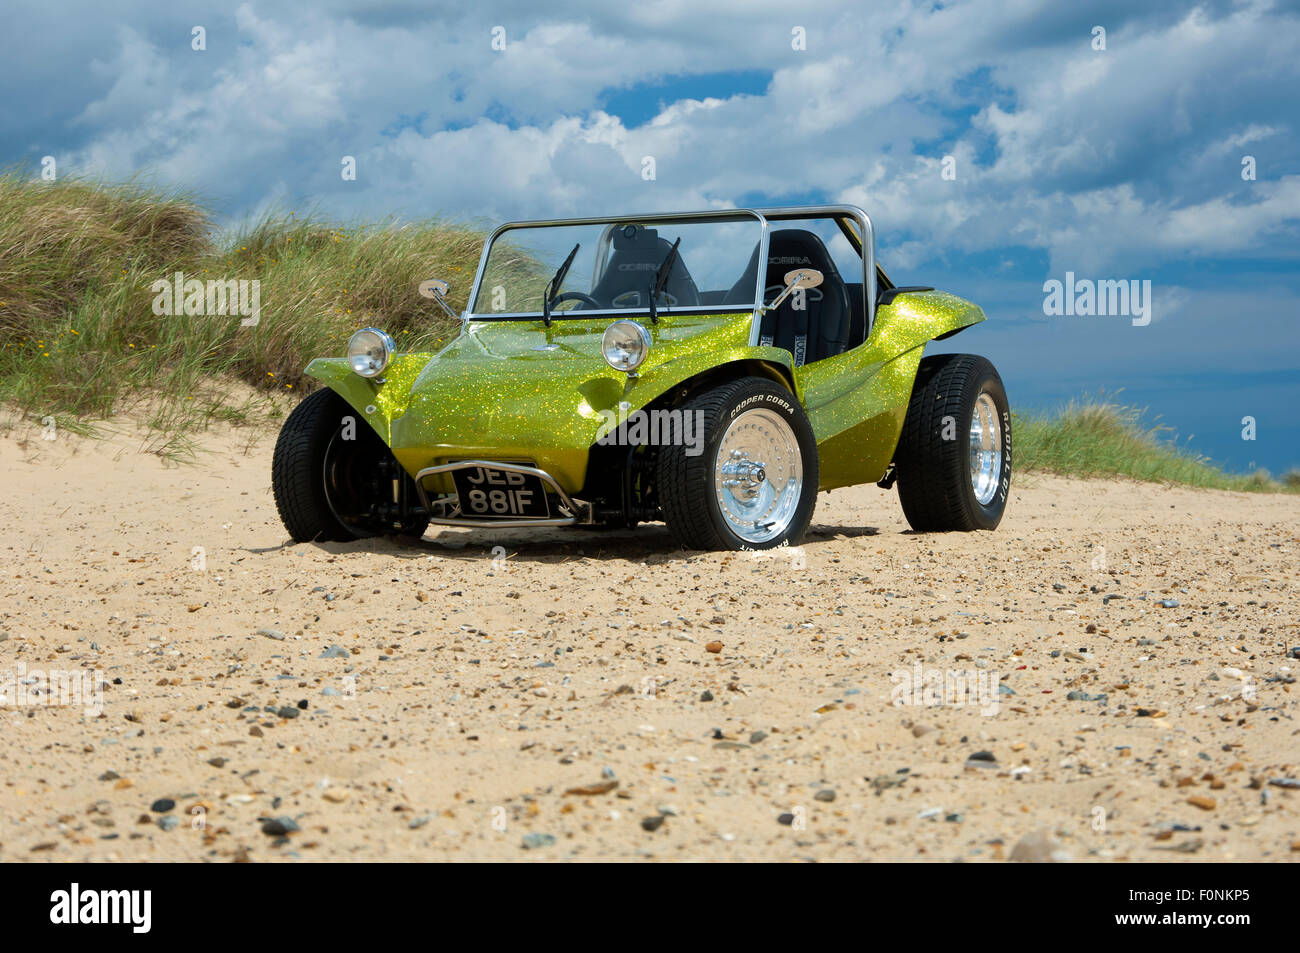 Beach buggy on a sandy beach. VW Beetle based dune buggy car Stock Photo